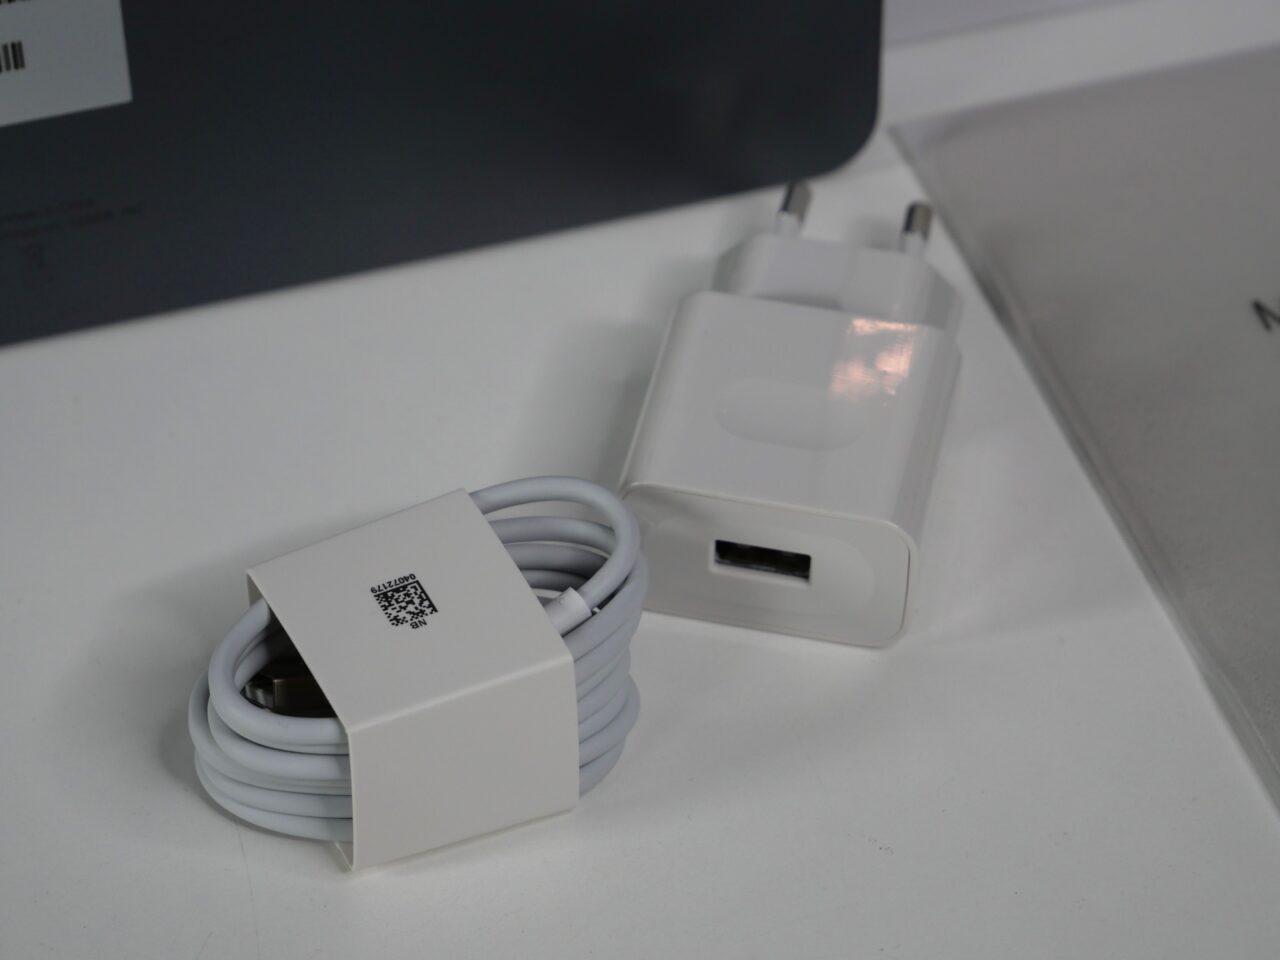 Biały adapter do ładowania USB oraz zwinięty kabel z owijką na białym stole.